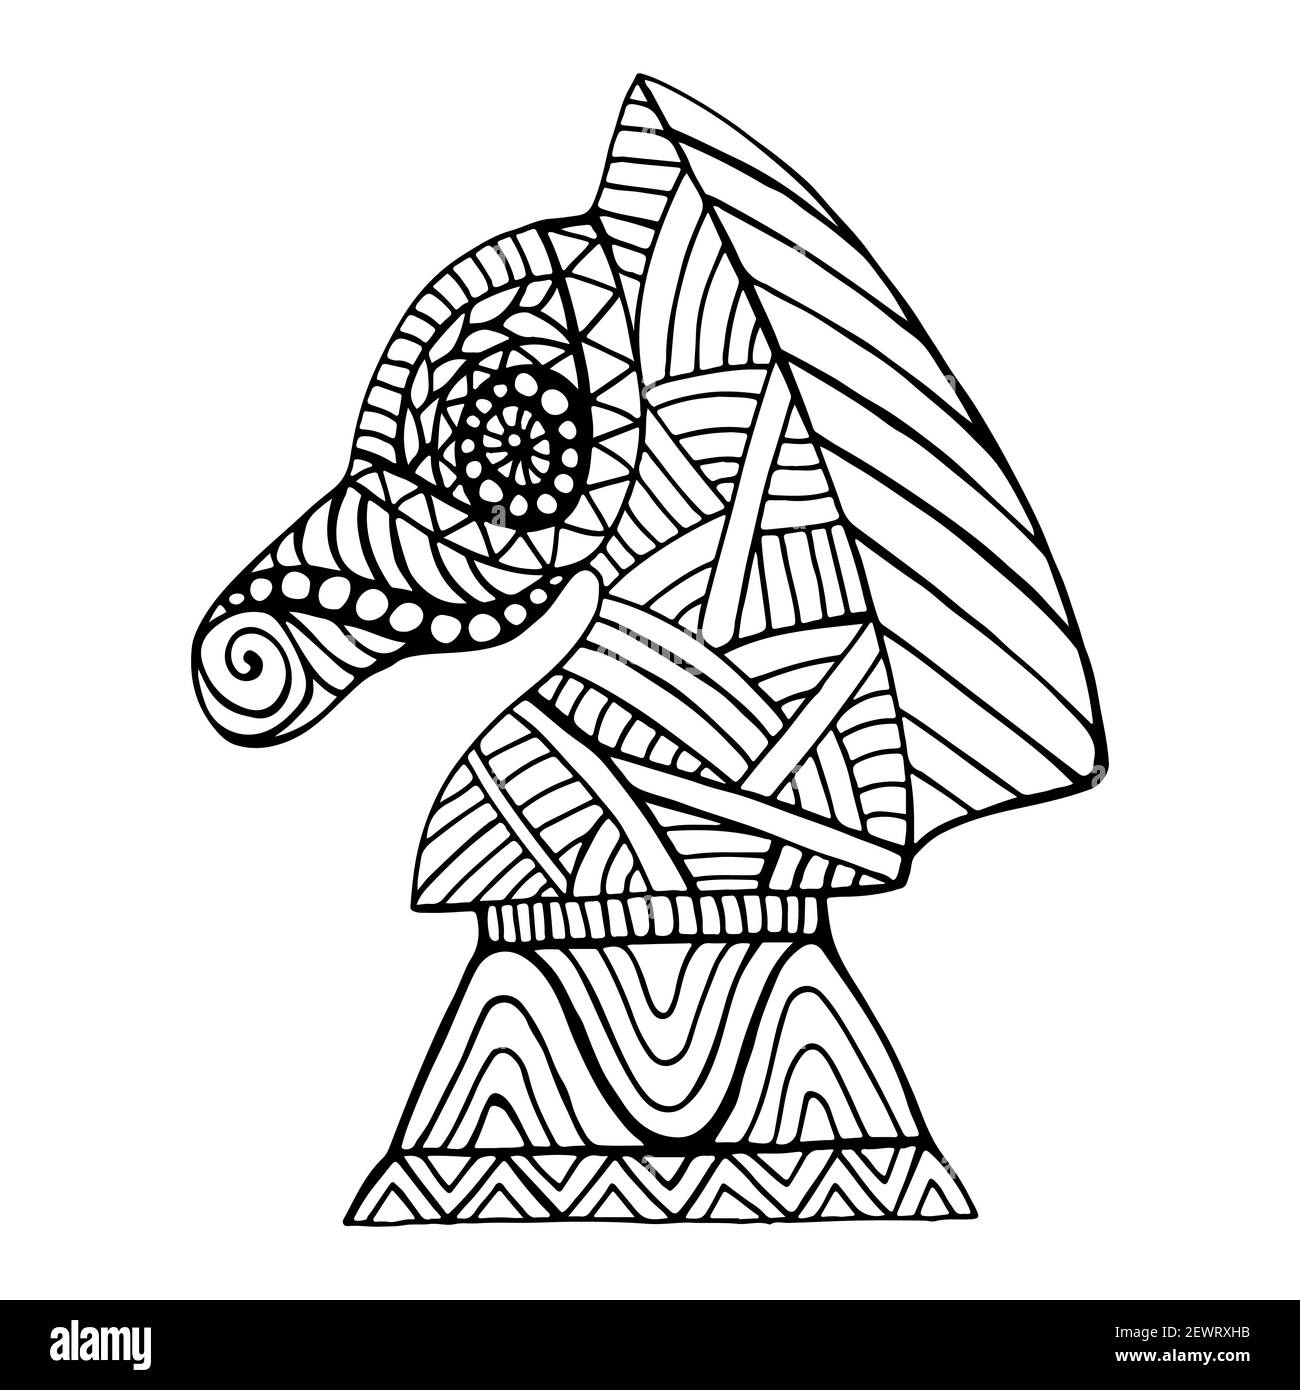 Pferdeschachstück mit vielen dekorativen Mustern im Doodle-Stil Malbuch für Erwachsene und Kinder, Umriss in schwarzer Tinte isoliert auf weiß. Stock Vektor